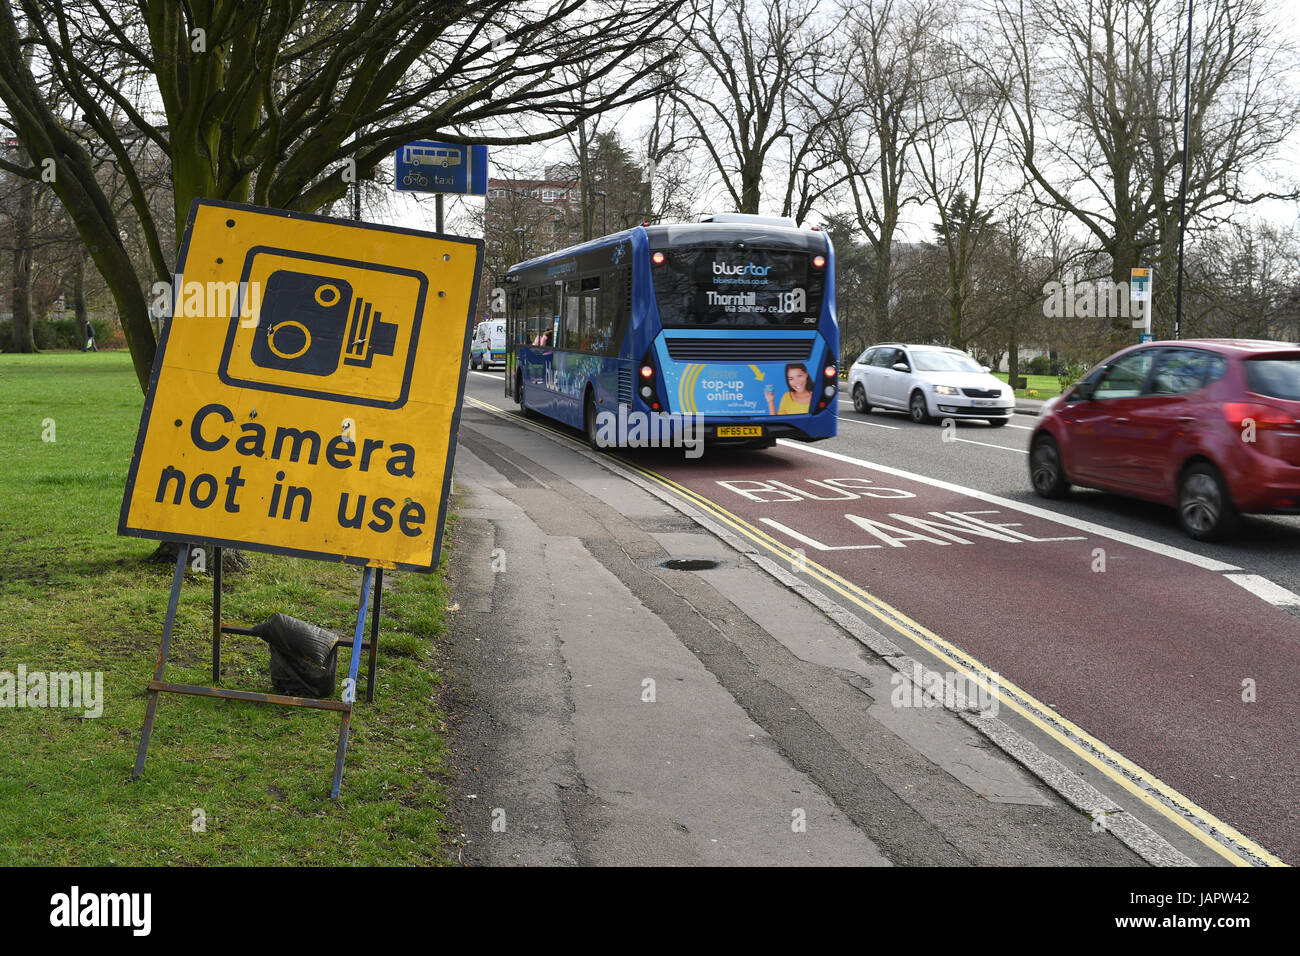 Bus-Bahn-Verkehr-Kamera nicht im Einsatz Schild Stockfoto